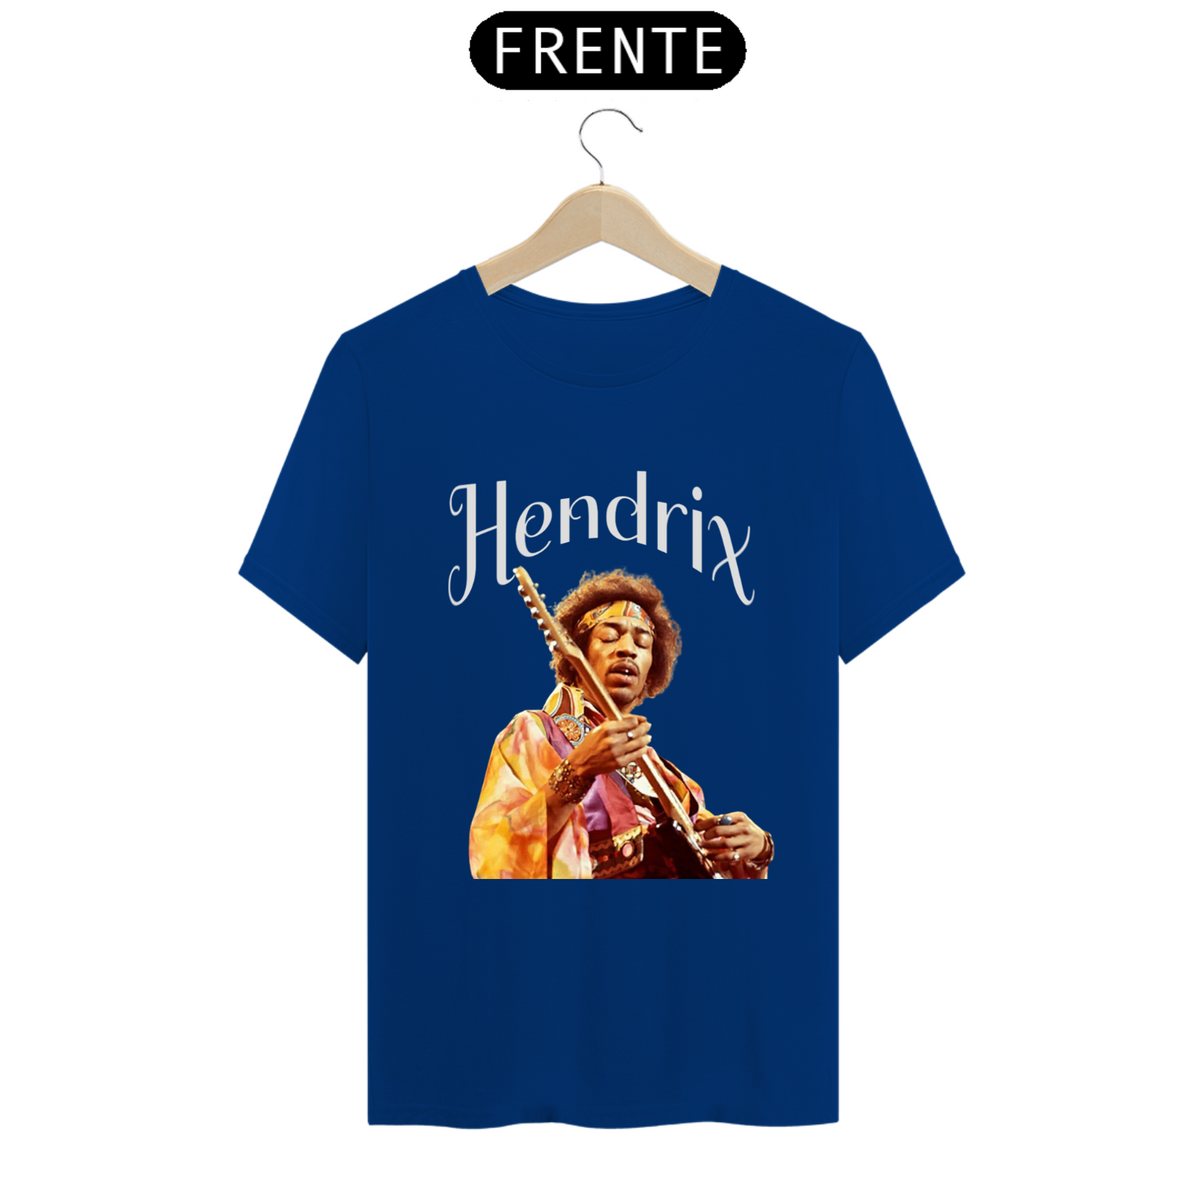 Nome do produto: Hendrix